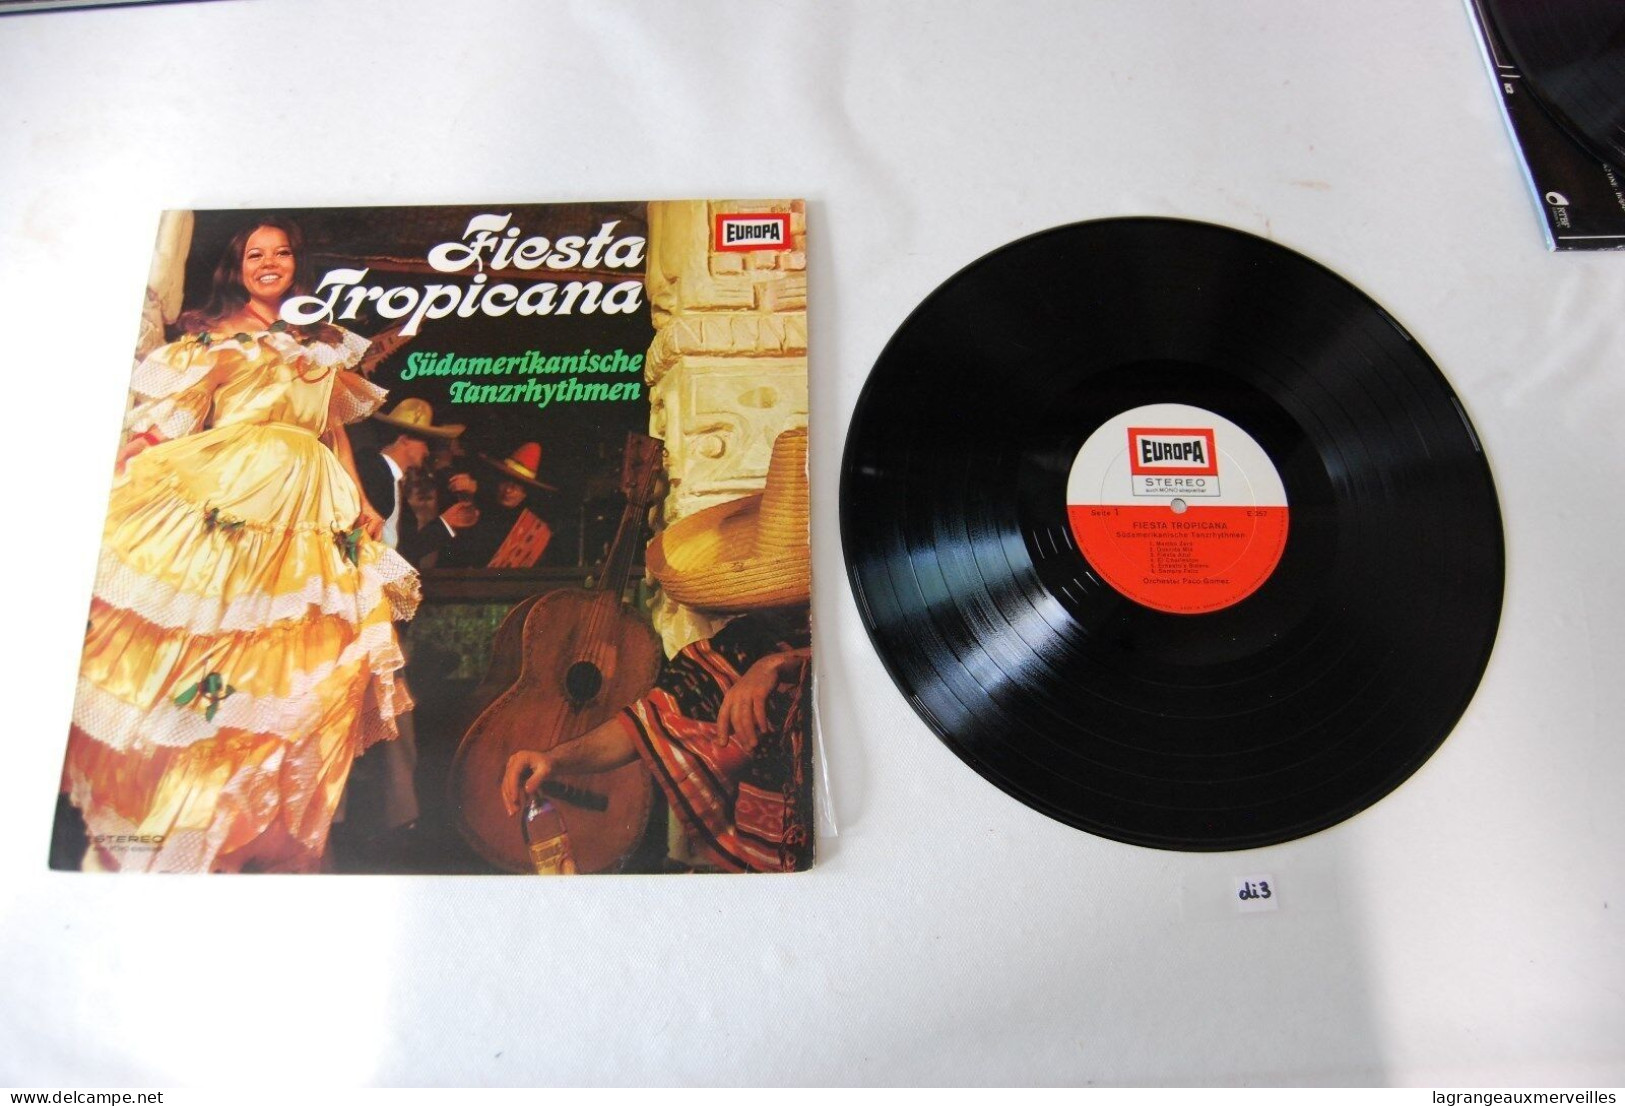 Di3- Vinyl 33 T - Fiesta Tropicana - Europa - Wereldmuziek